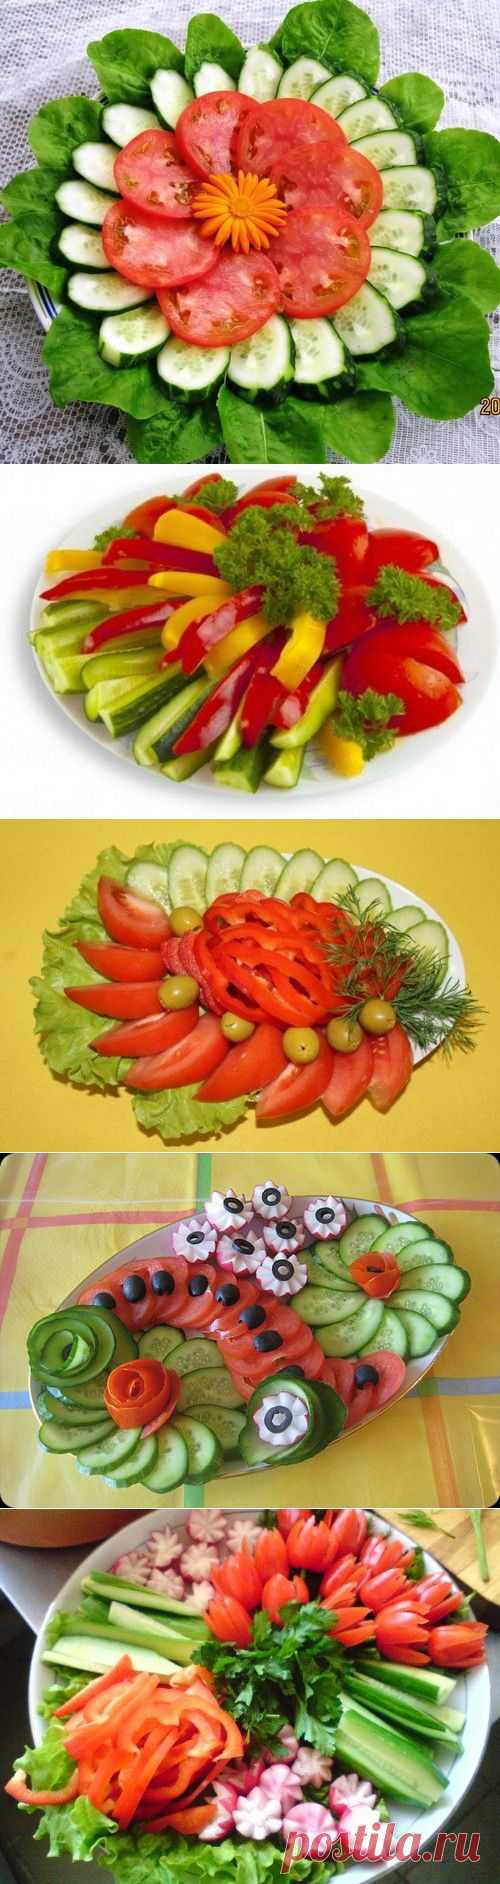 Красивое оформление овощных нарезок | Женский журнал